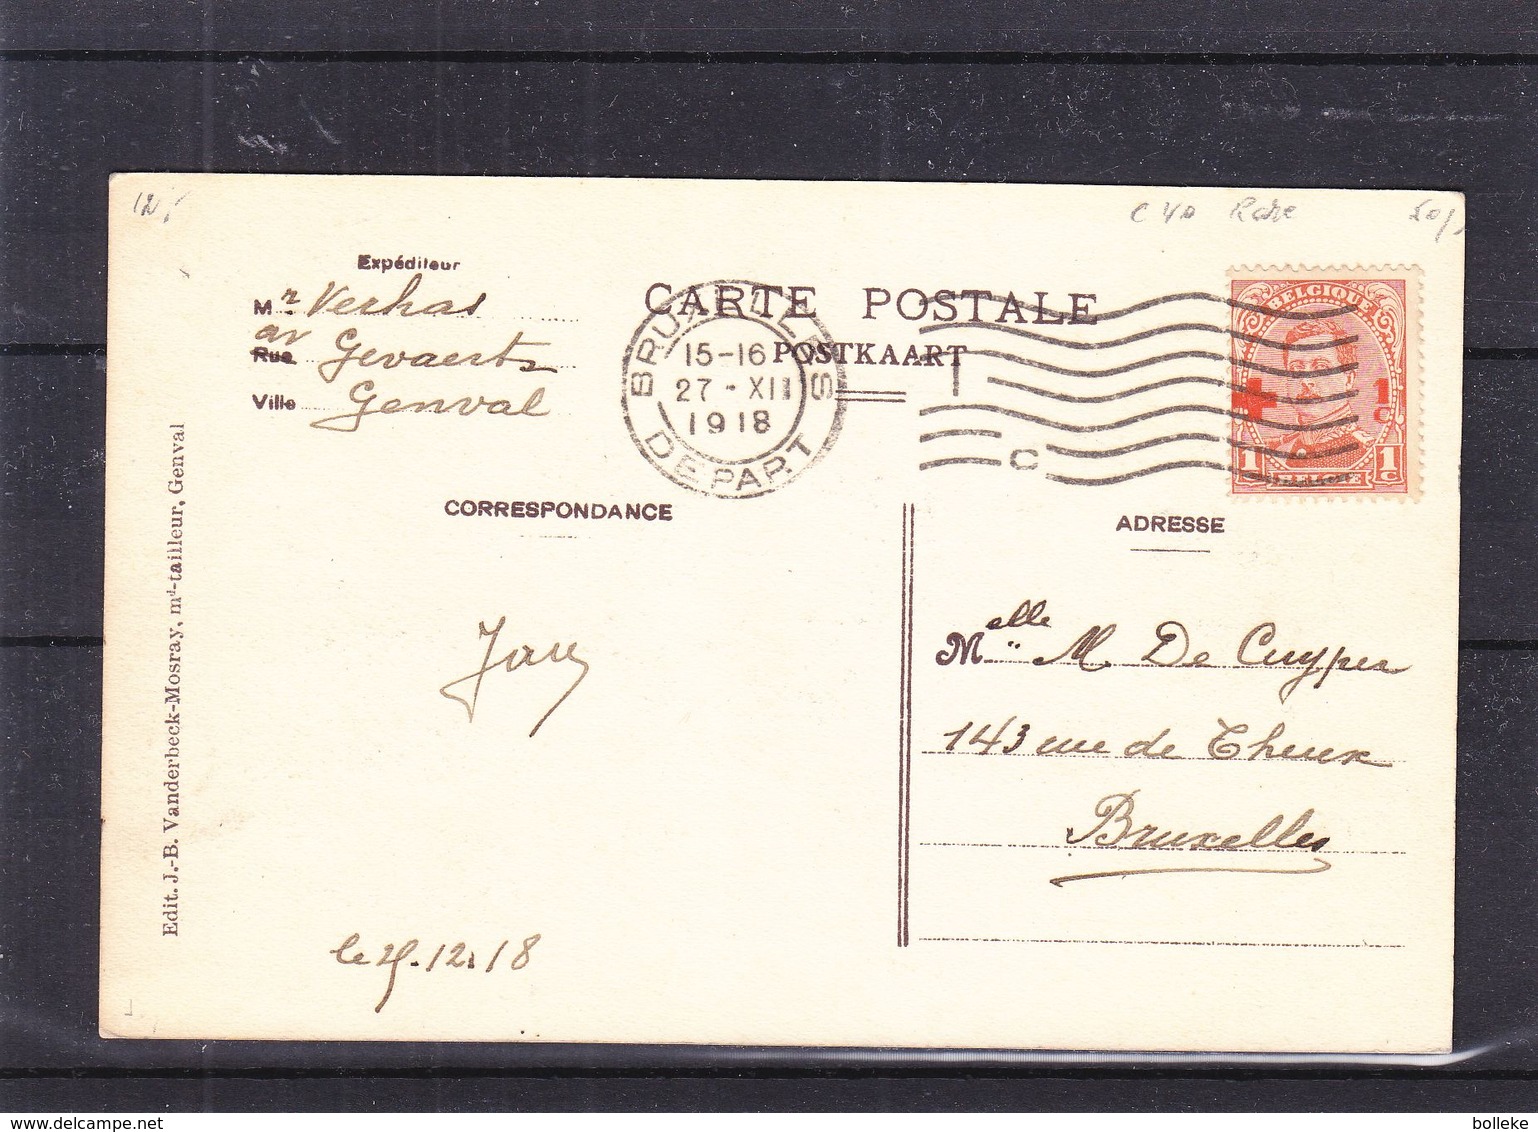 Croix Rouge - Belgique - Carte Postale De 1918 - Oblit Bruxelles - Avec Le 1c - Rare - Valeur 40 Euros - 1918 Cruz Roja